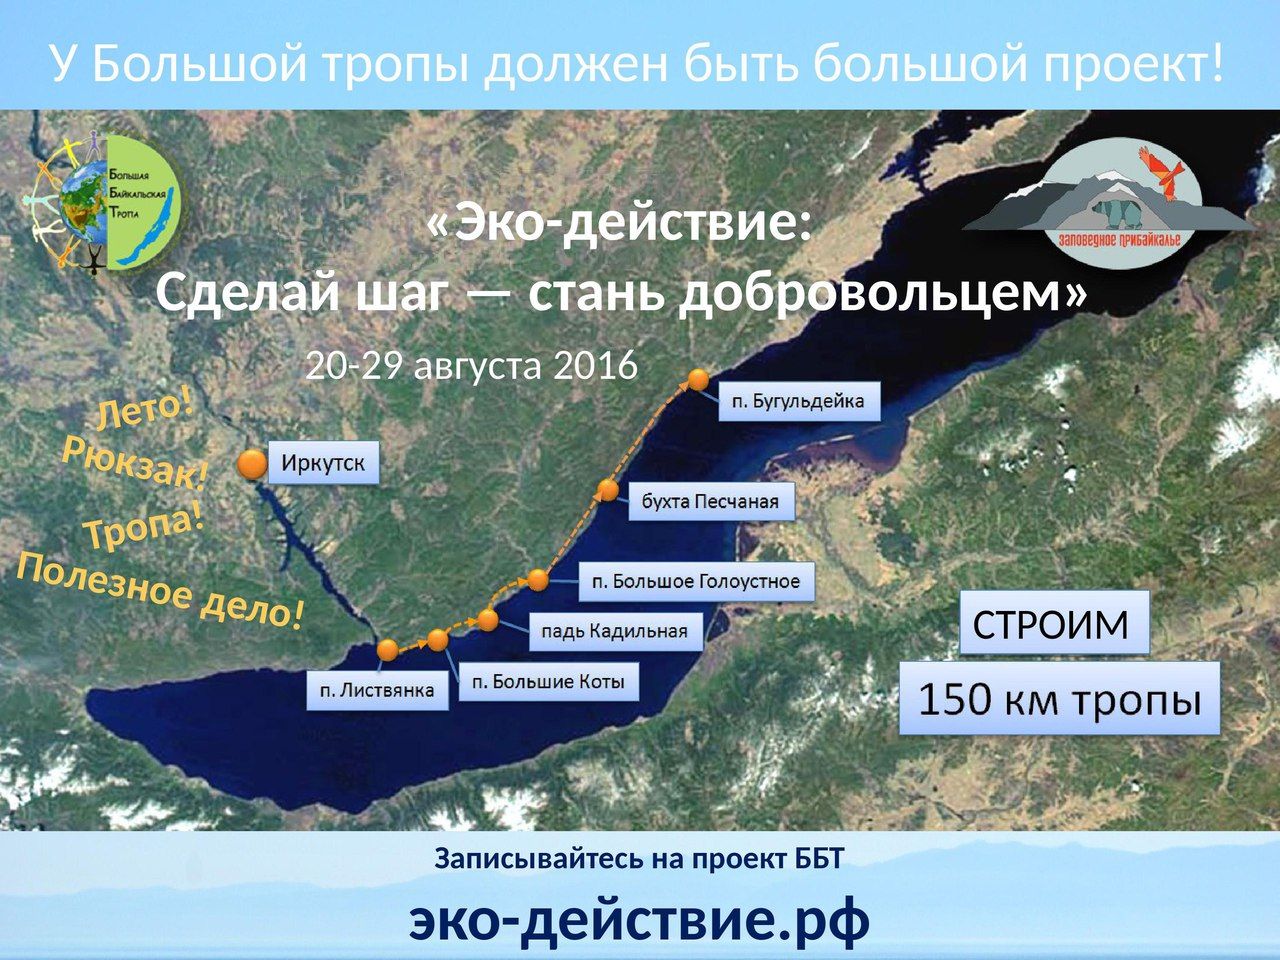 Вдоль озера Байкал построят новую туристическую тропу 